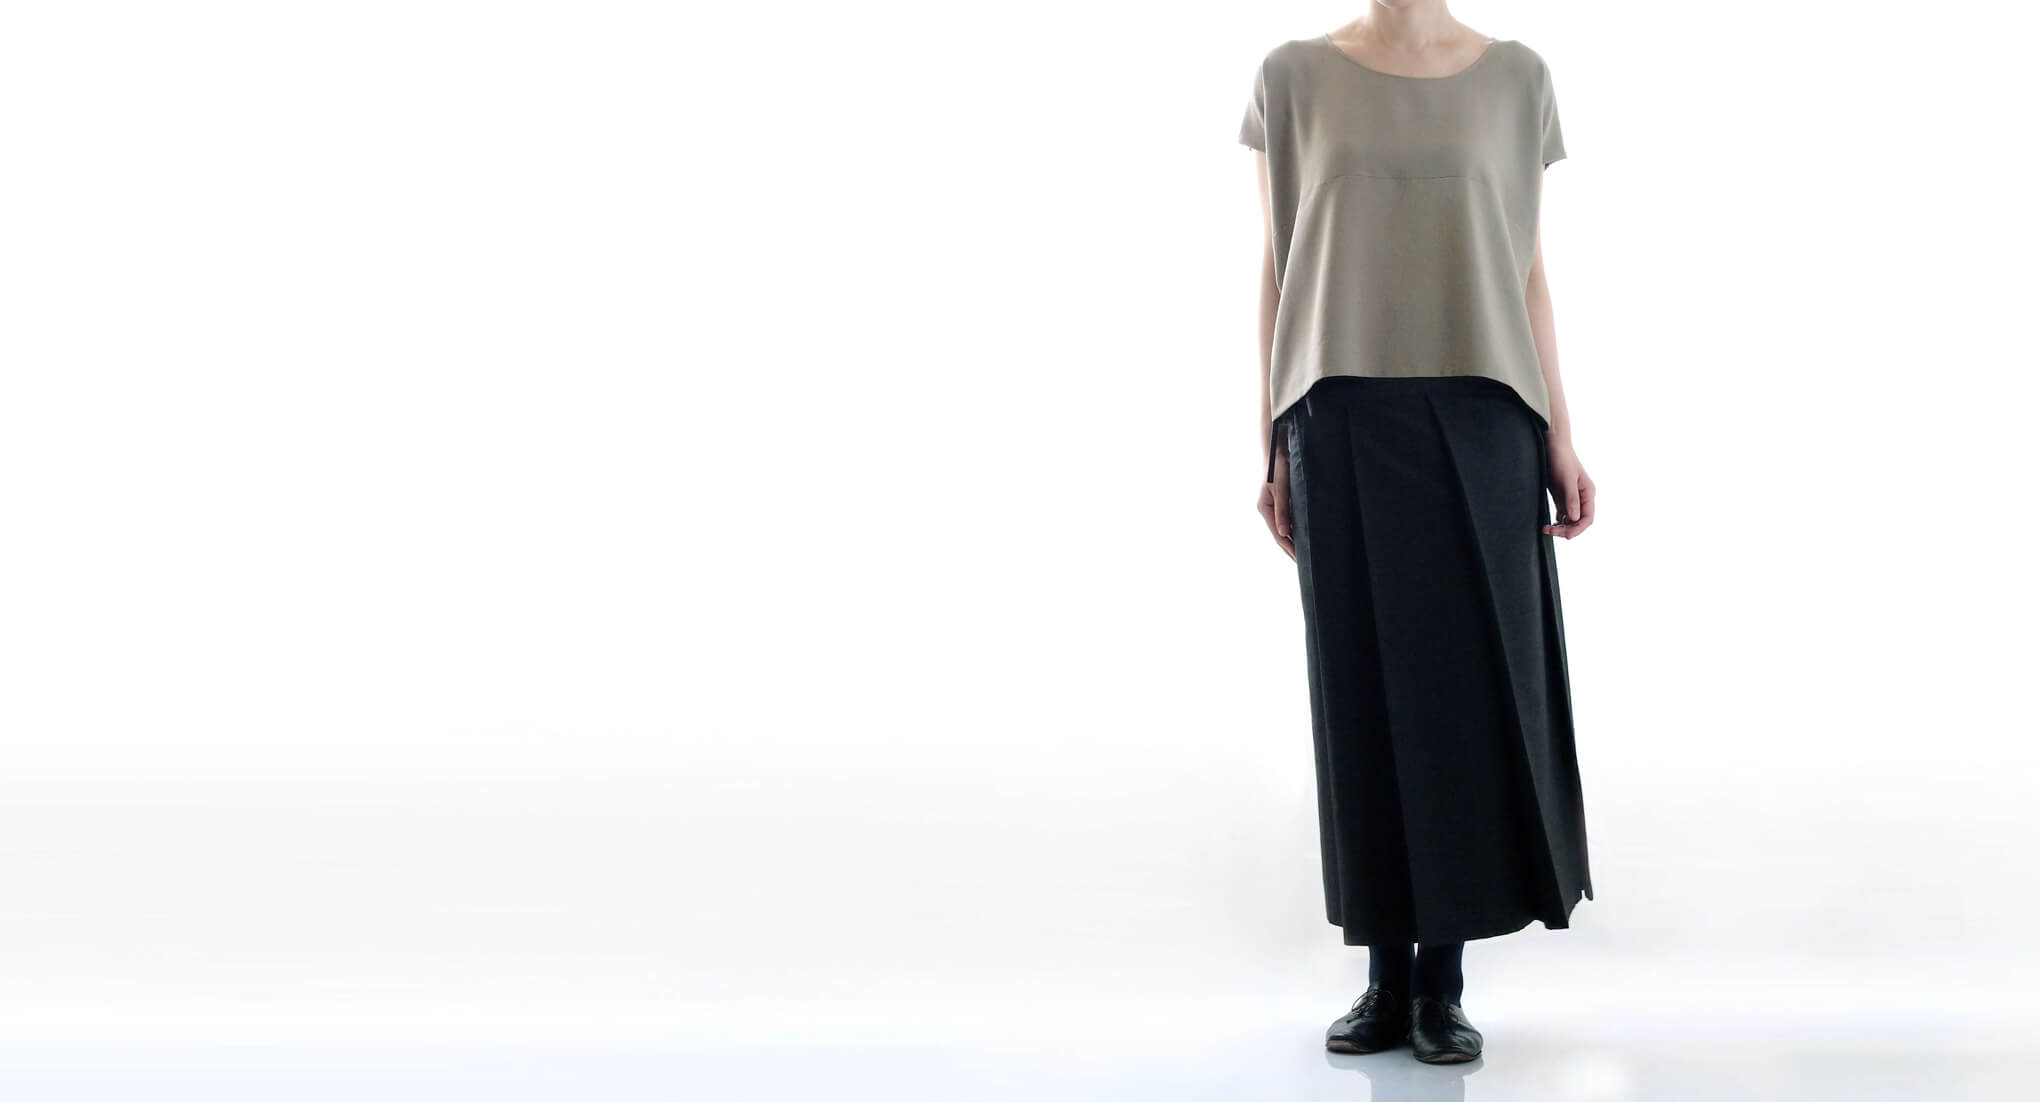 袴を思わせるデザインのプリーツスカート。